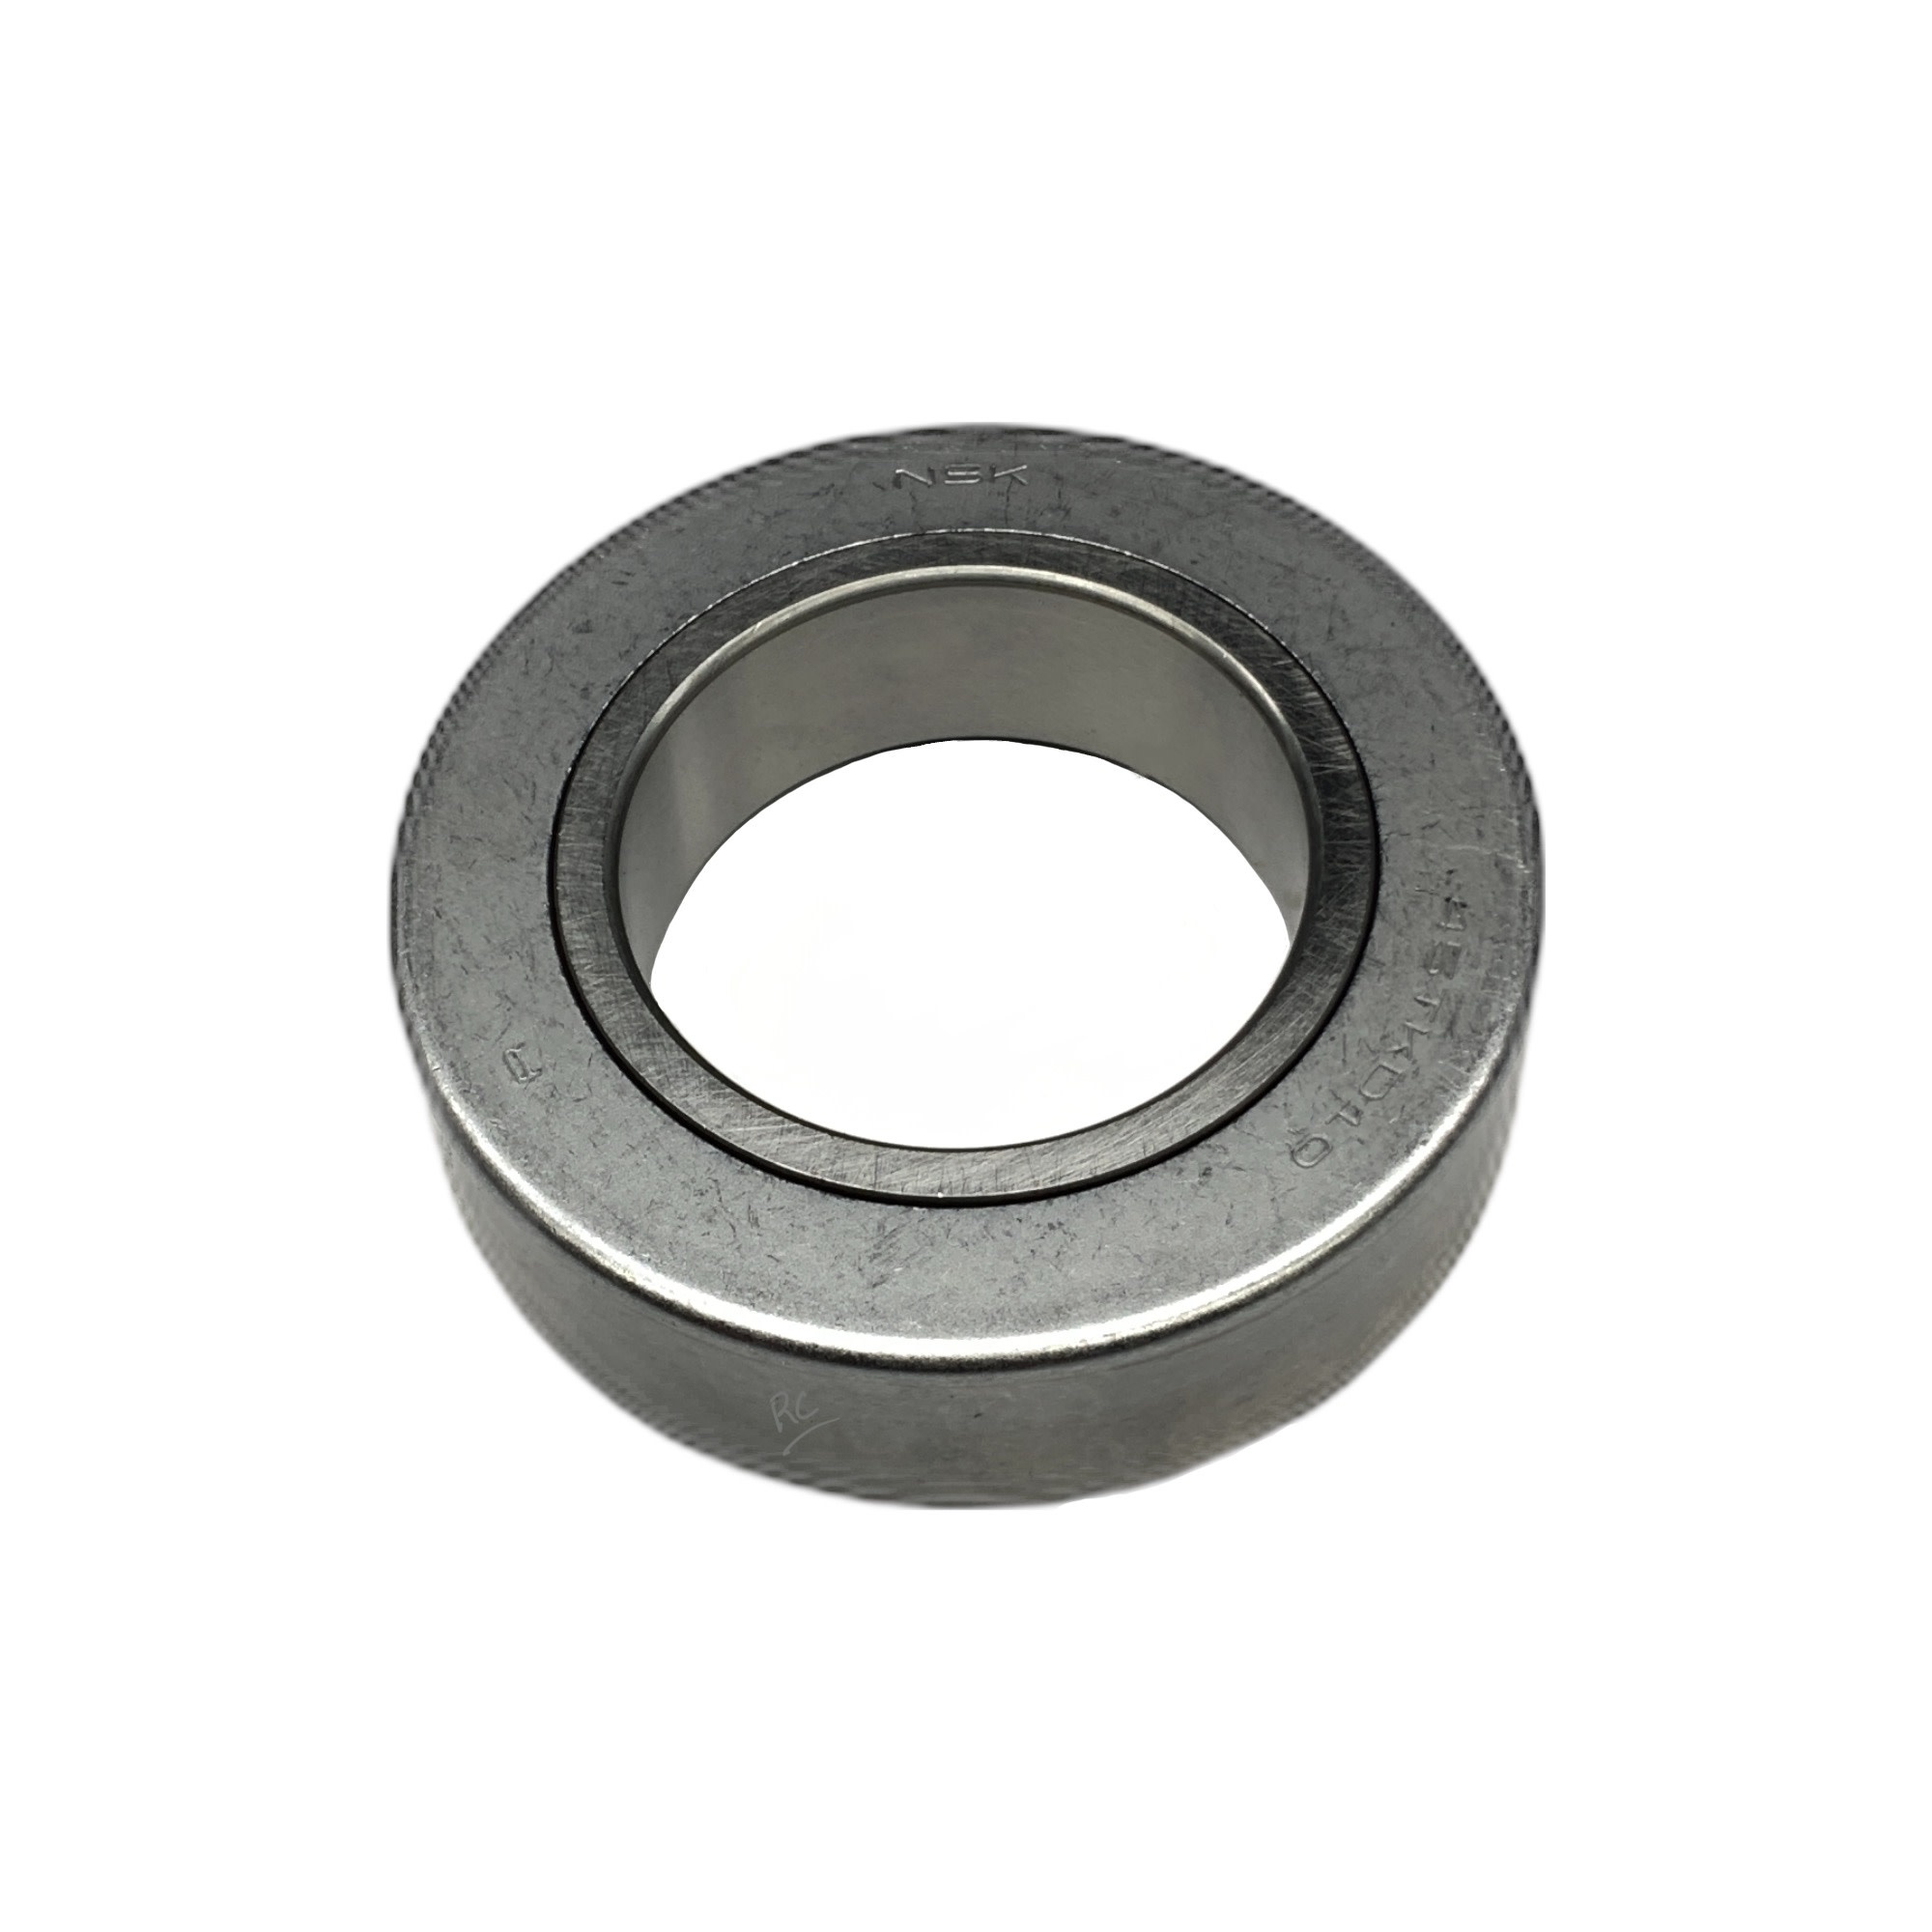 Release Bearing, Clutch - 3B - throw out bearing (Koyo) - 90363-45002